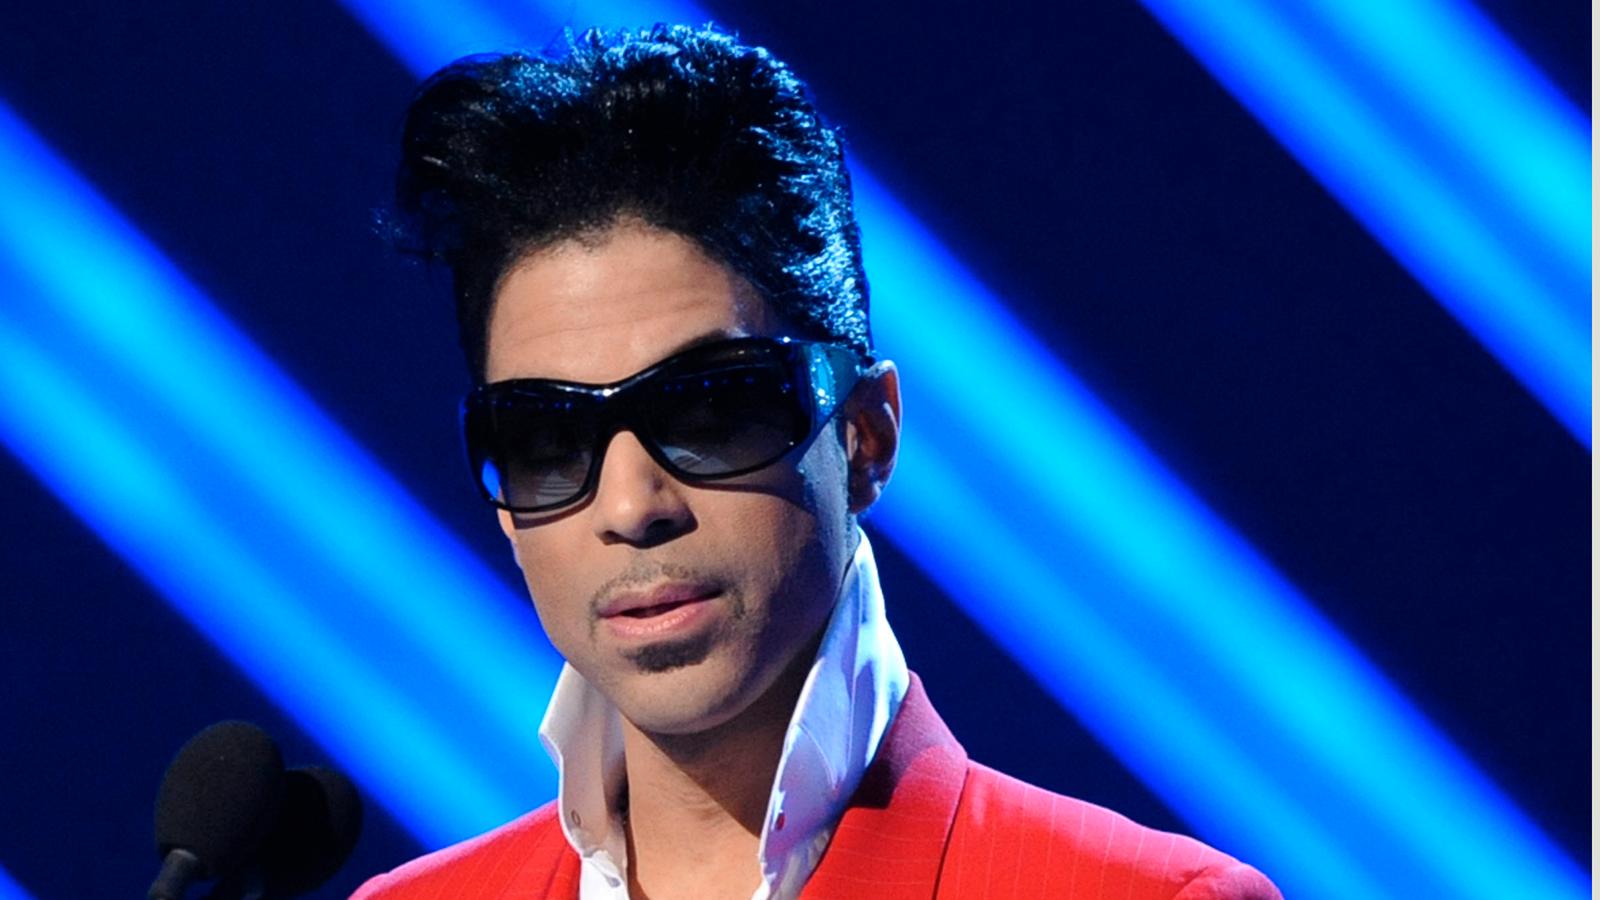 Prince gitarr såld för rekordsumma.